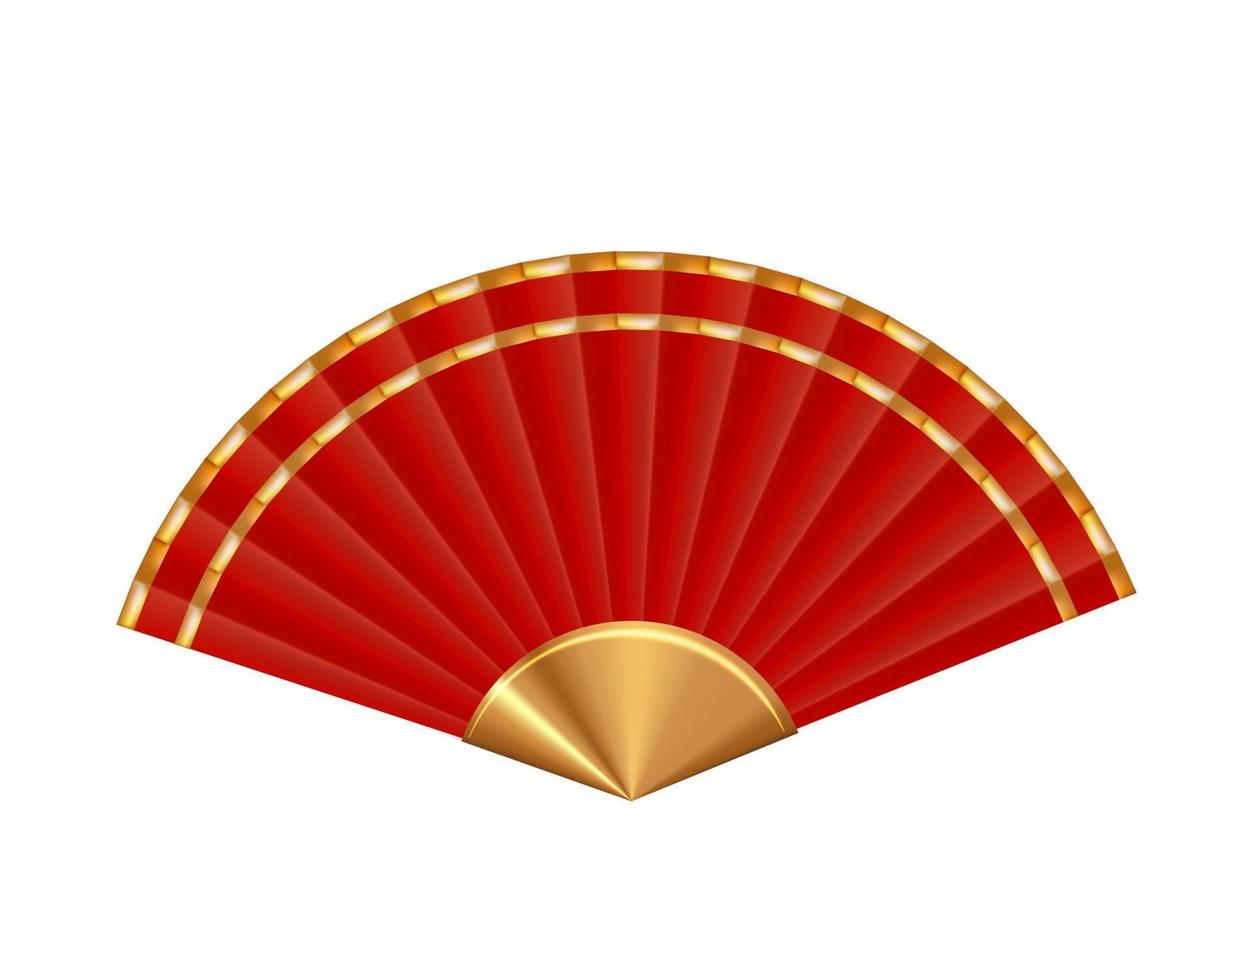 ventilador chino rojo 3d realista aislado sobre fondo blanco. elemento de diseño para la celebración del año nuevo chino eps10 vector